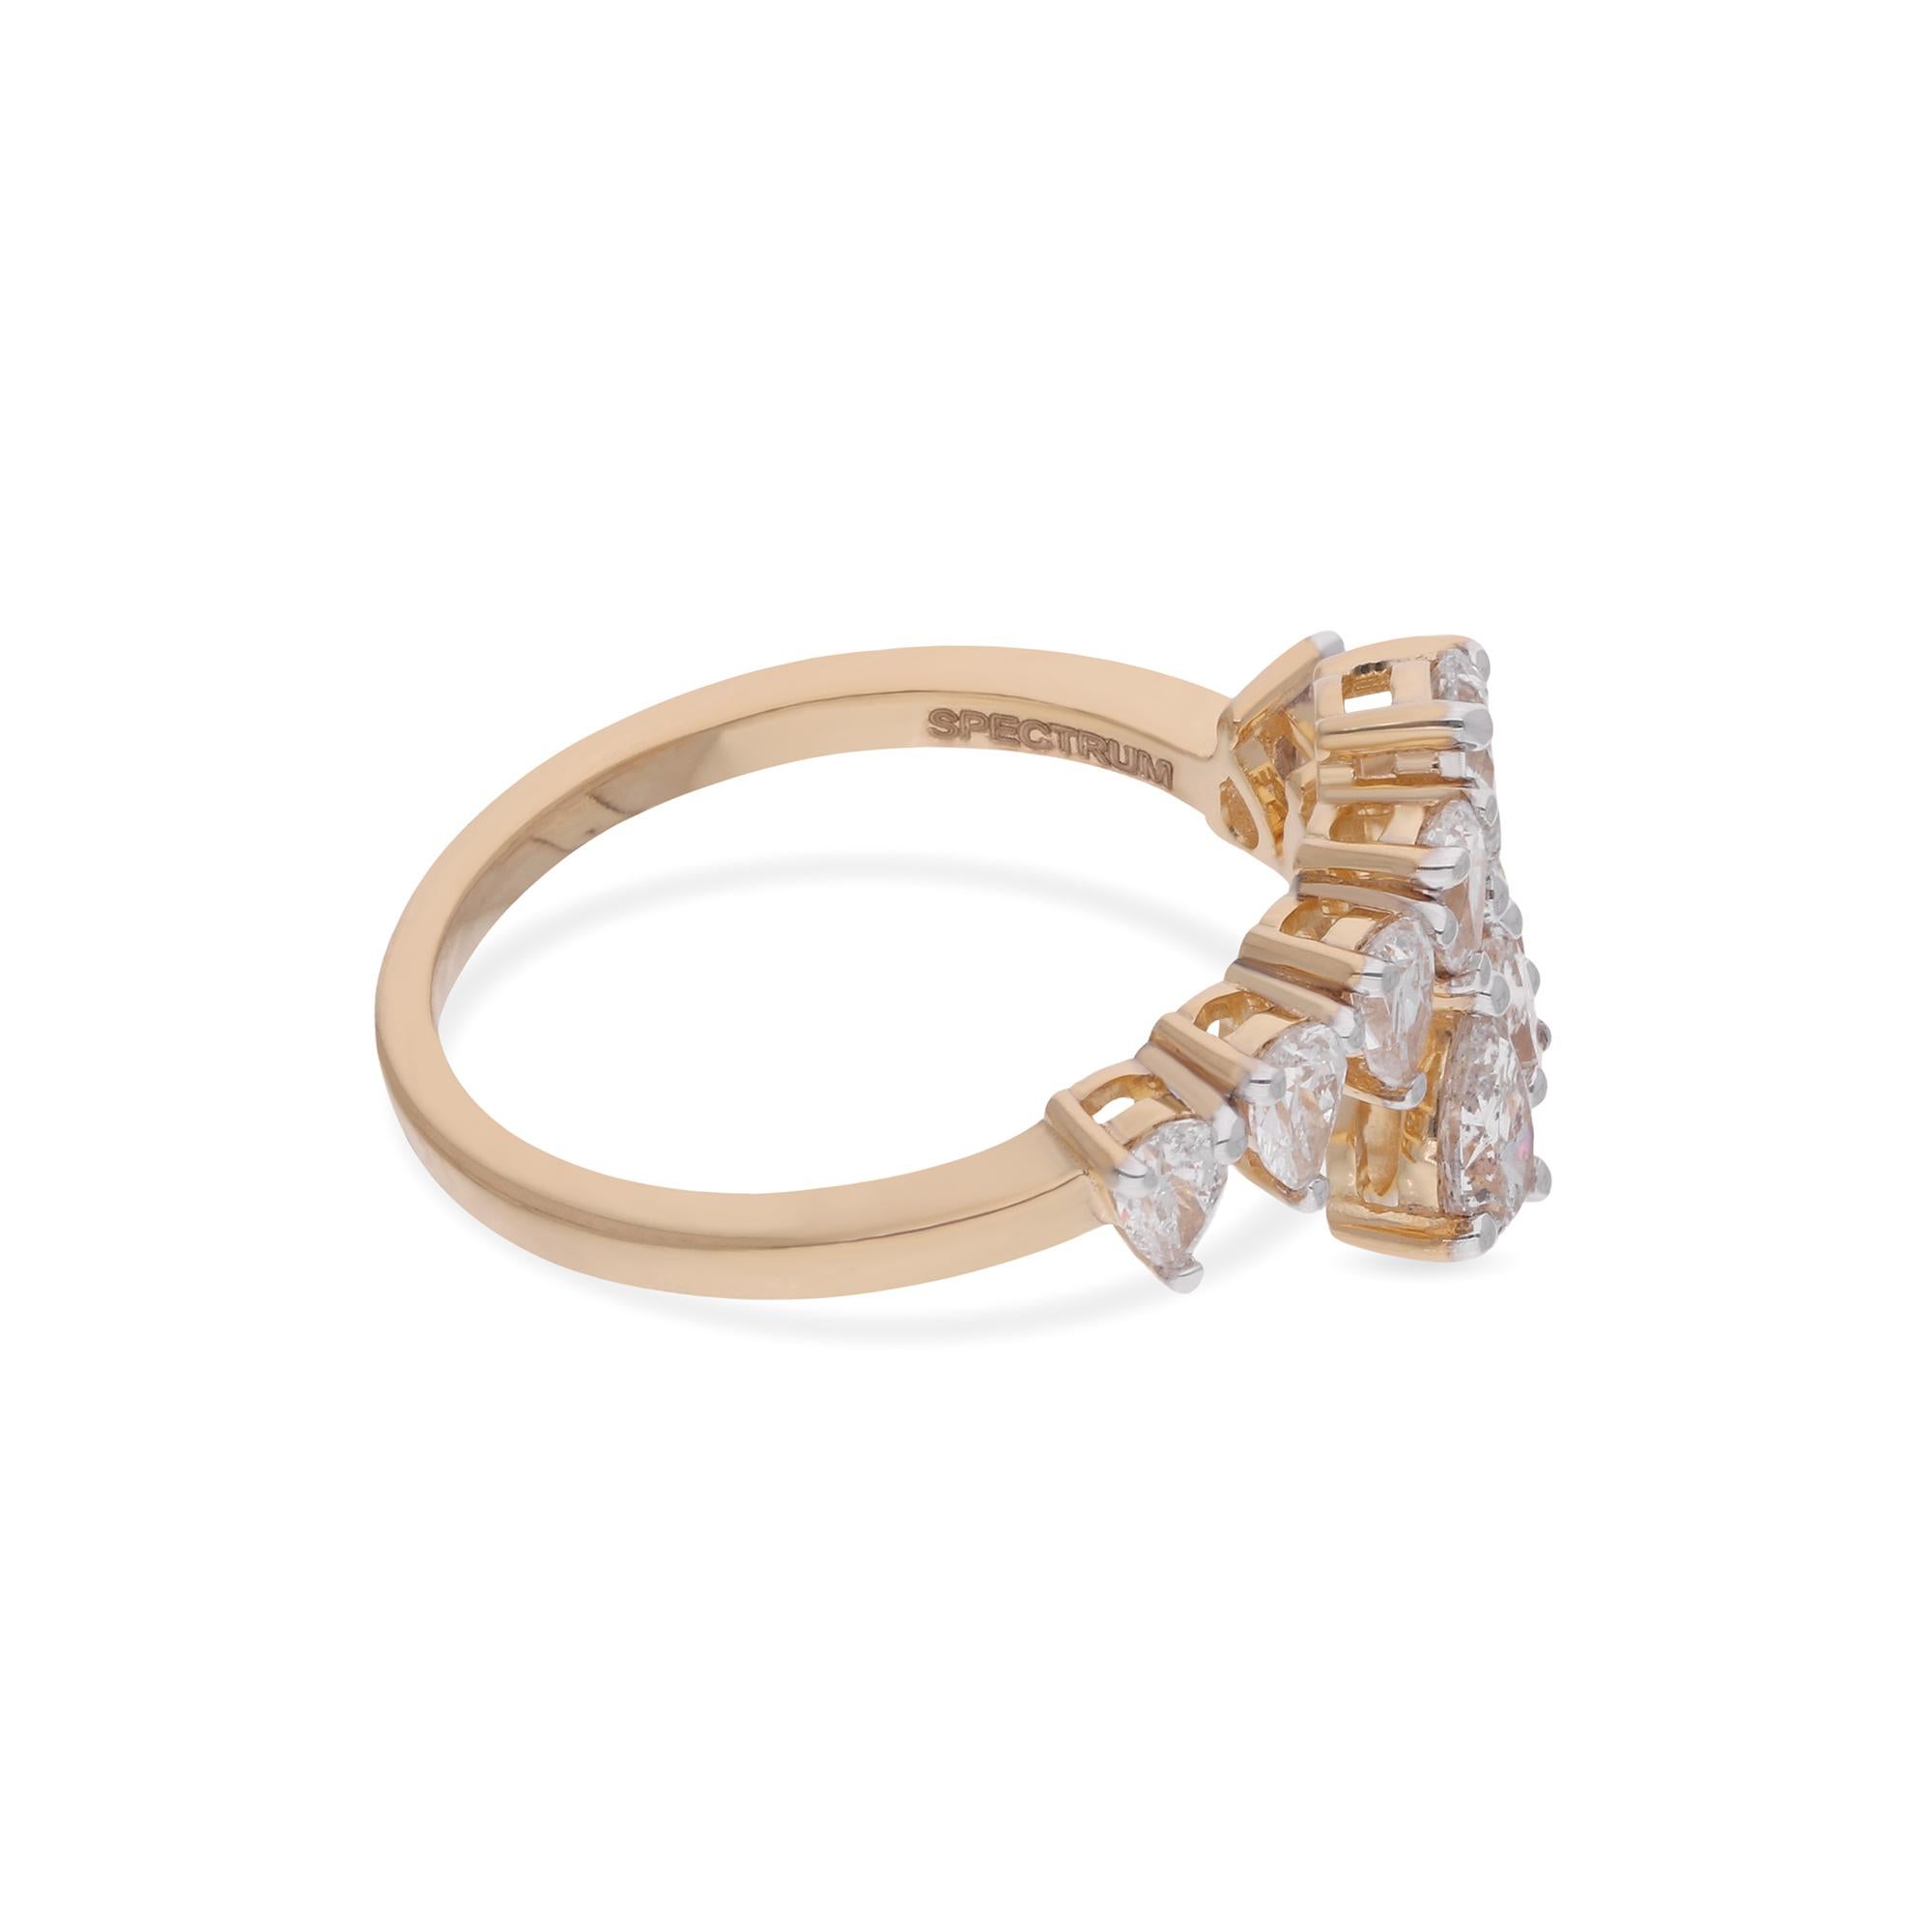 Erhöhen Sie Ihren Stil mit der unaufdringlichen Eleganz dieses echten 0,9-Karat-Diamant-Wickelrings, der mit viel Liebe zum Detail aus strahlendem 18-karätigem Gelbgold gefertigt wurde. Dieser Ring ist eine wahre Verkörperung von Raffinesse. Ein